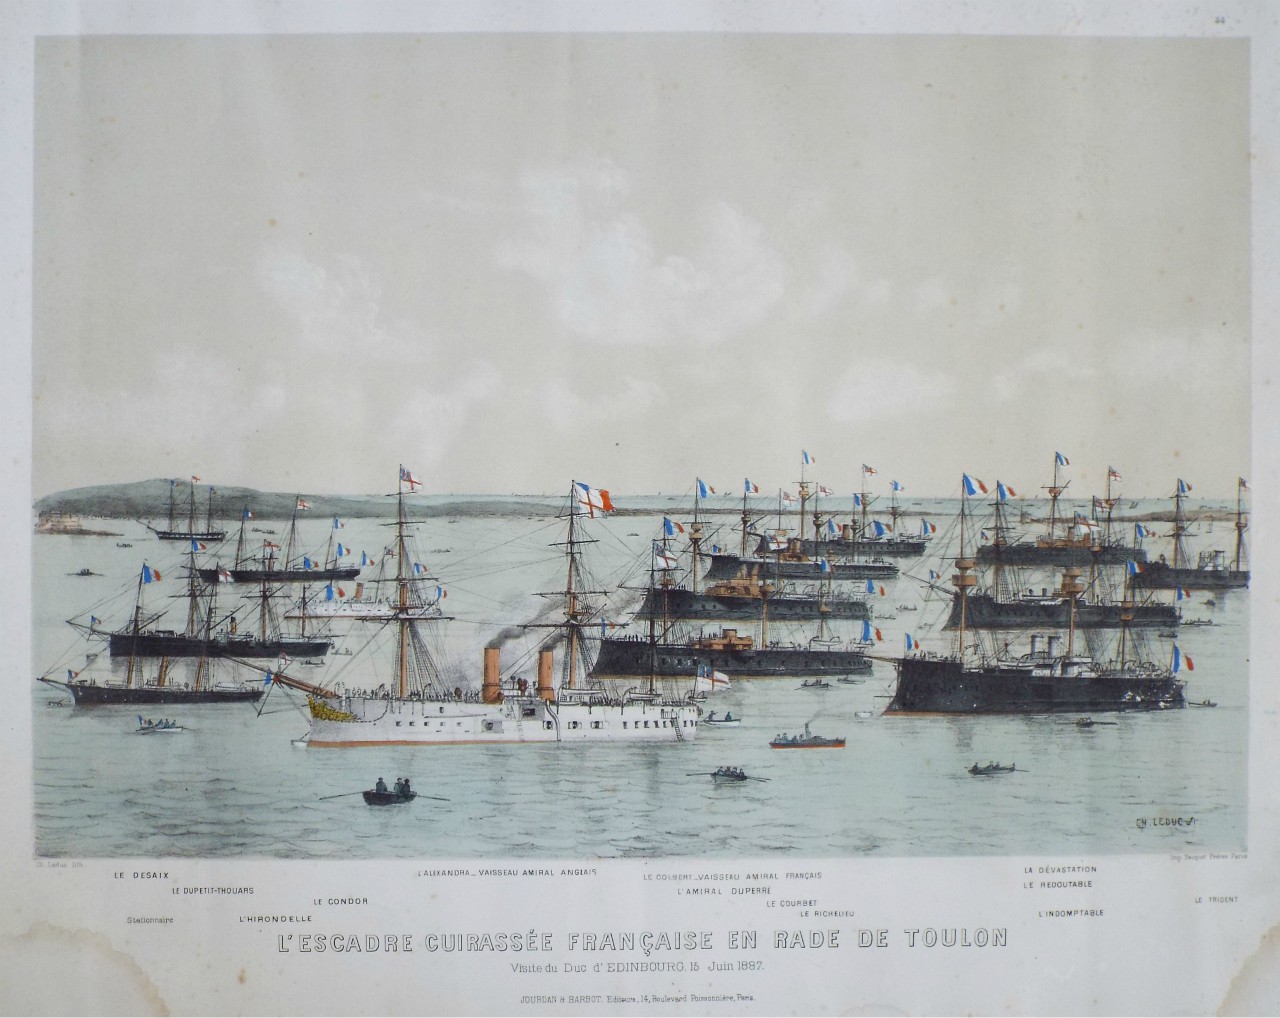 Lithograph - L'Escadre Cuirassee Francaise en Rade de Toulon Visite du Duc d'Edinbourg, 15 Juin 1887. - Leduc